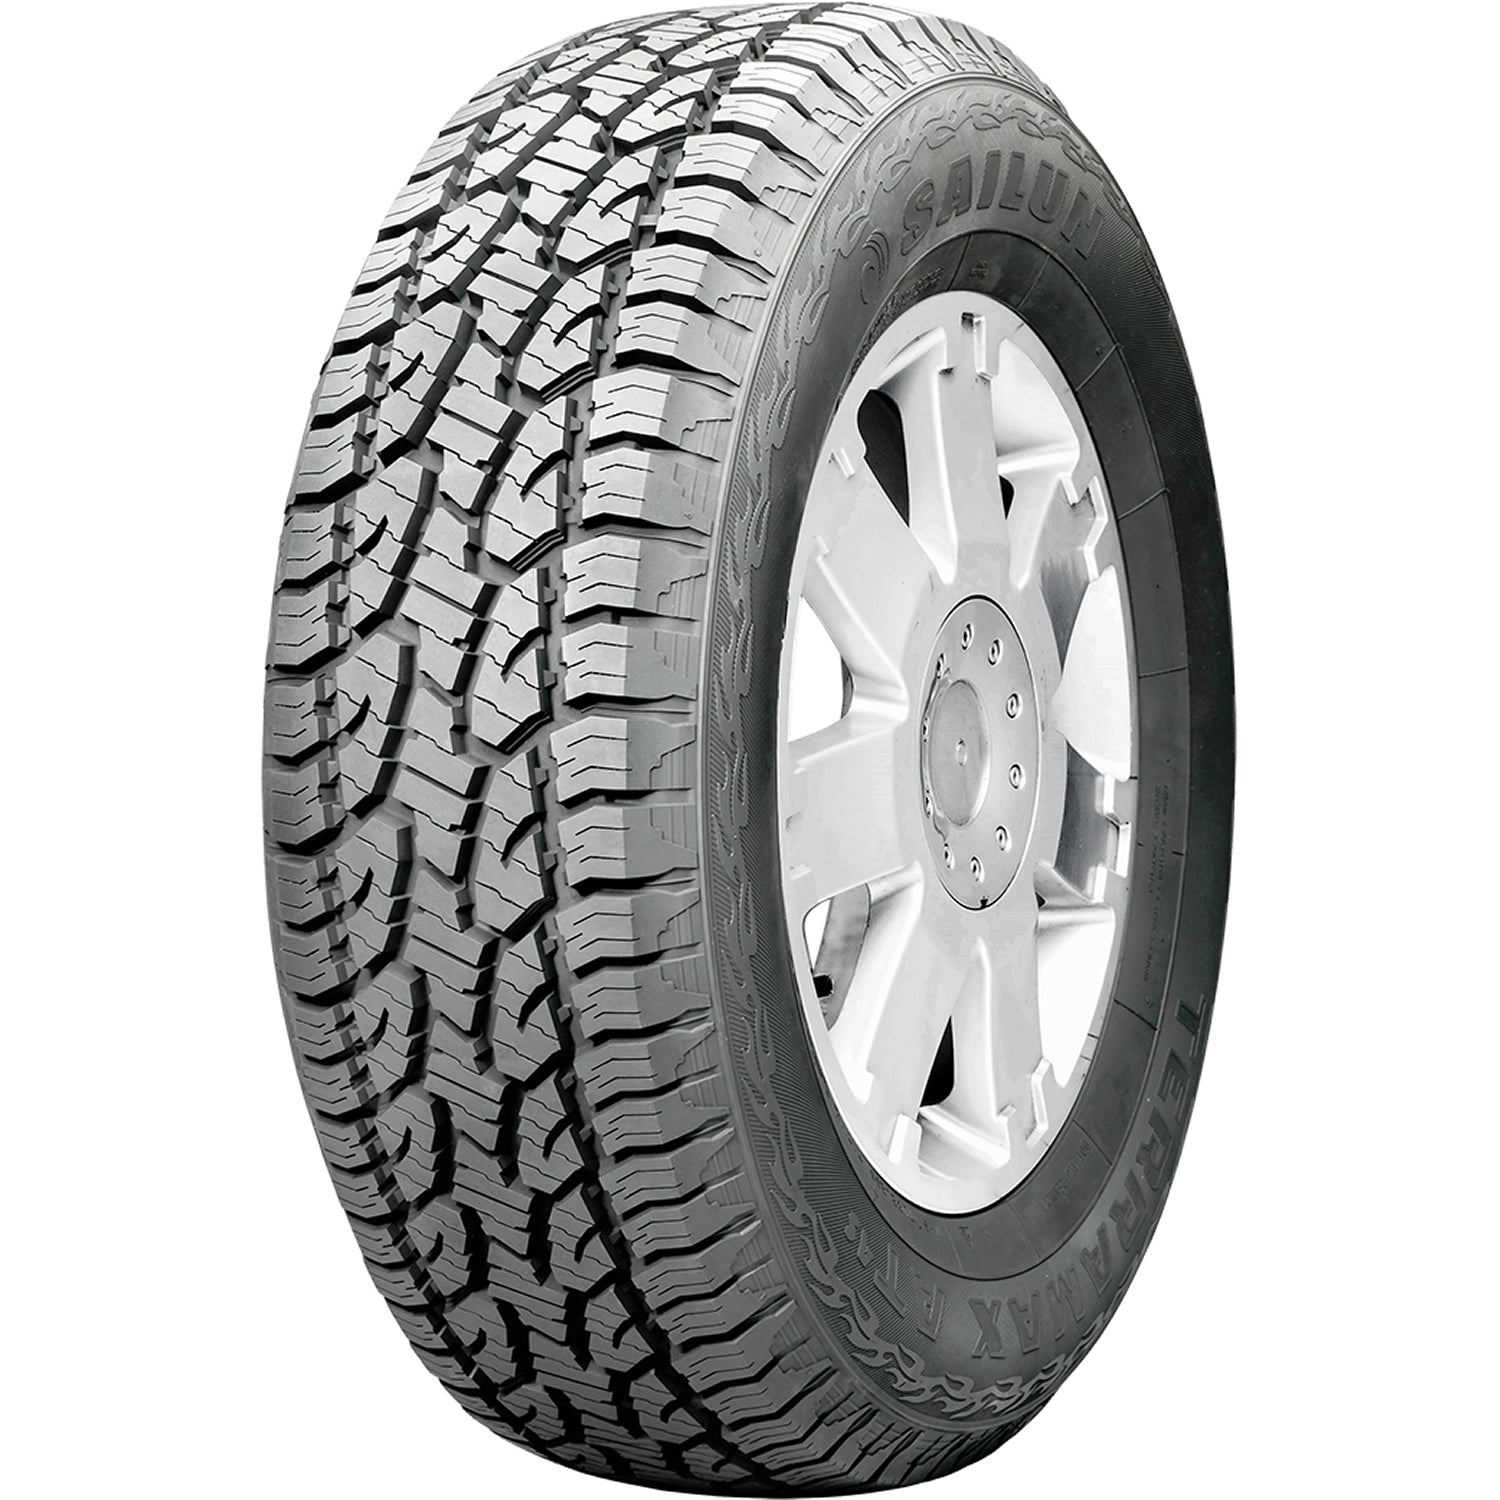 SAILUN TERRAMAX AT 4S 235/70R16 (29X9.5R 16) Tires